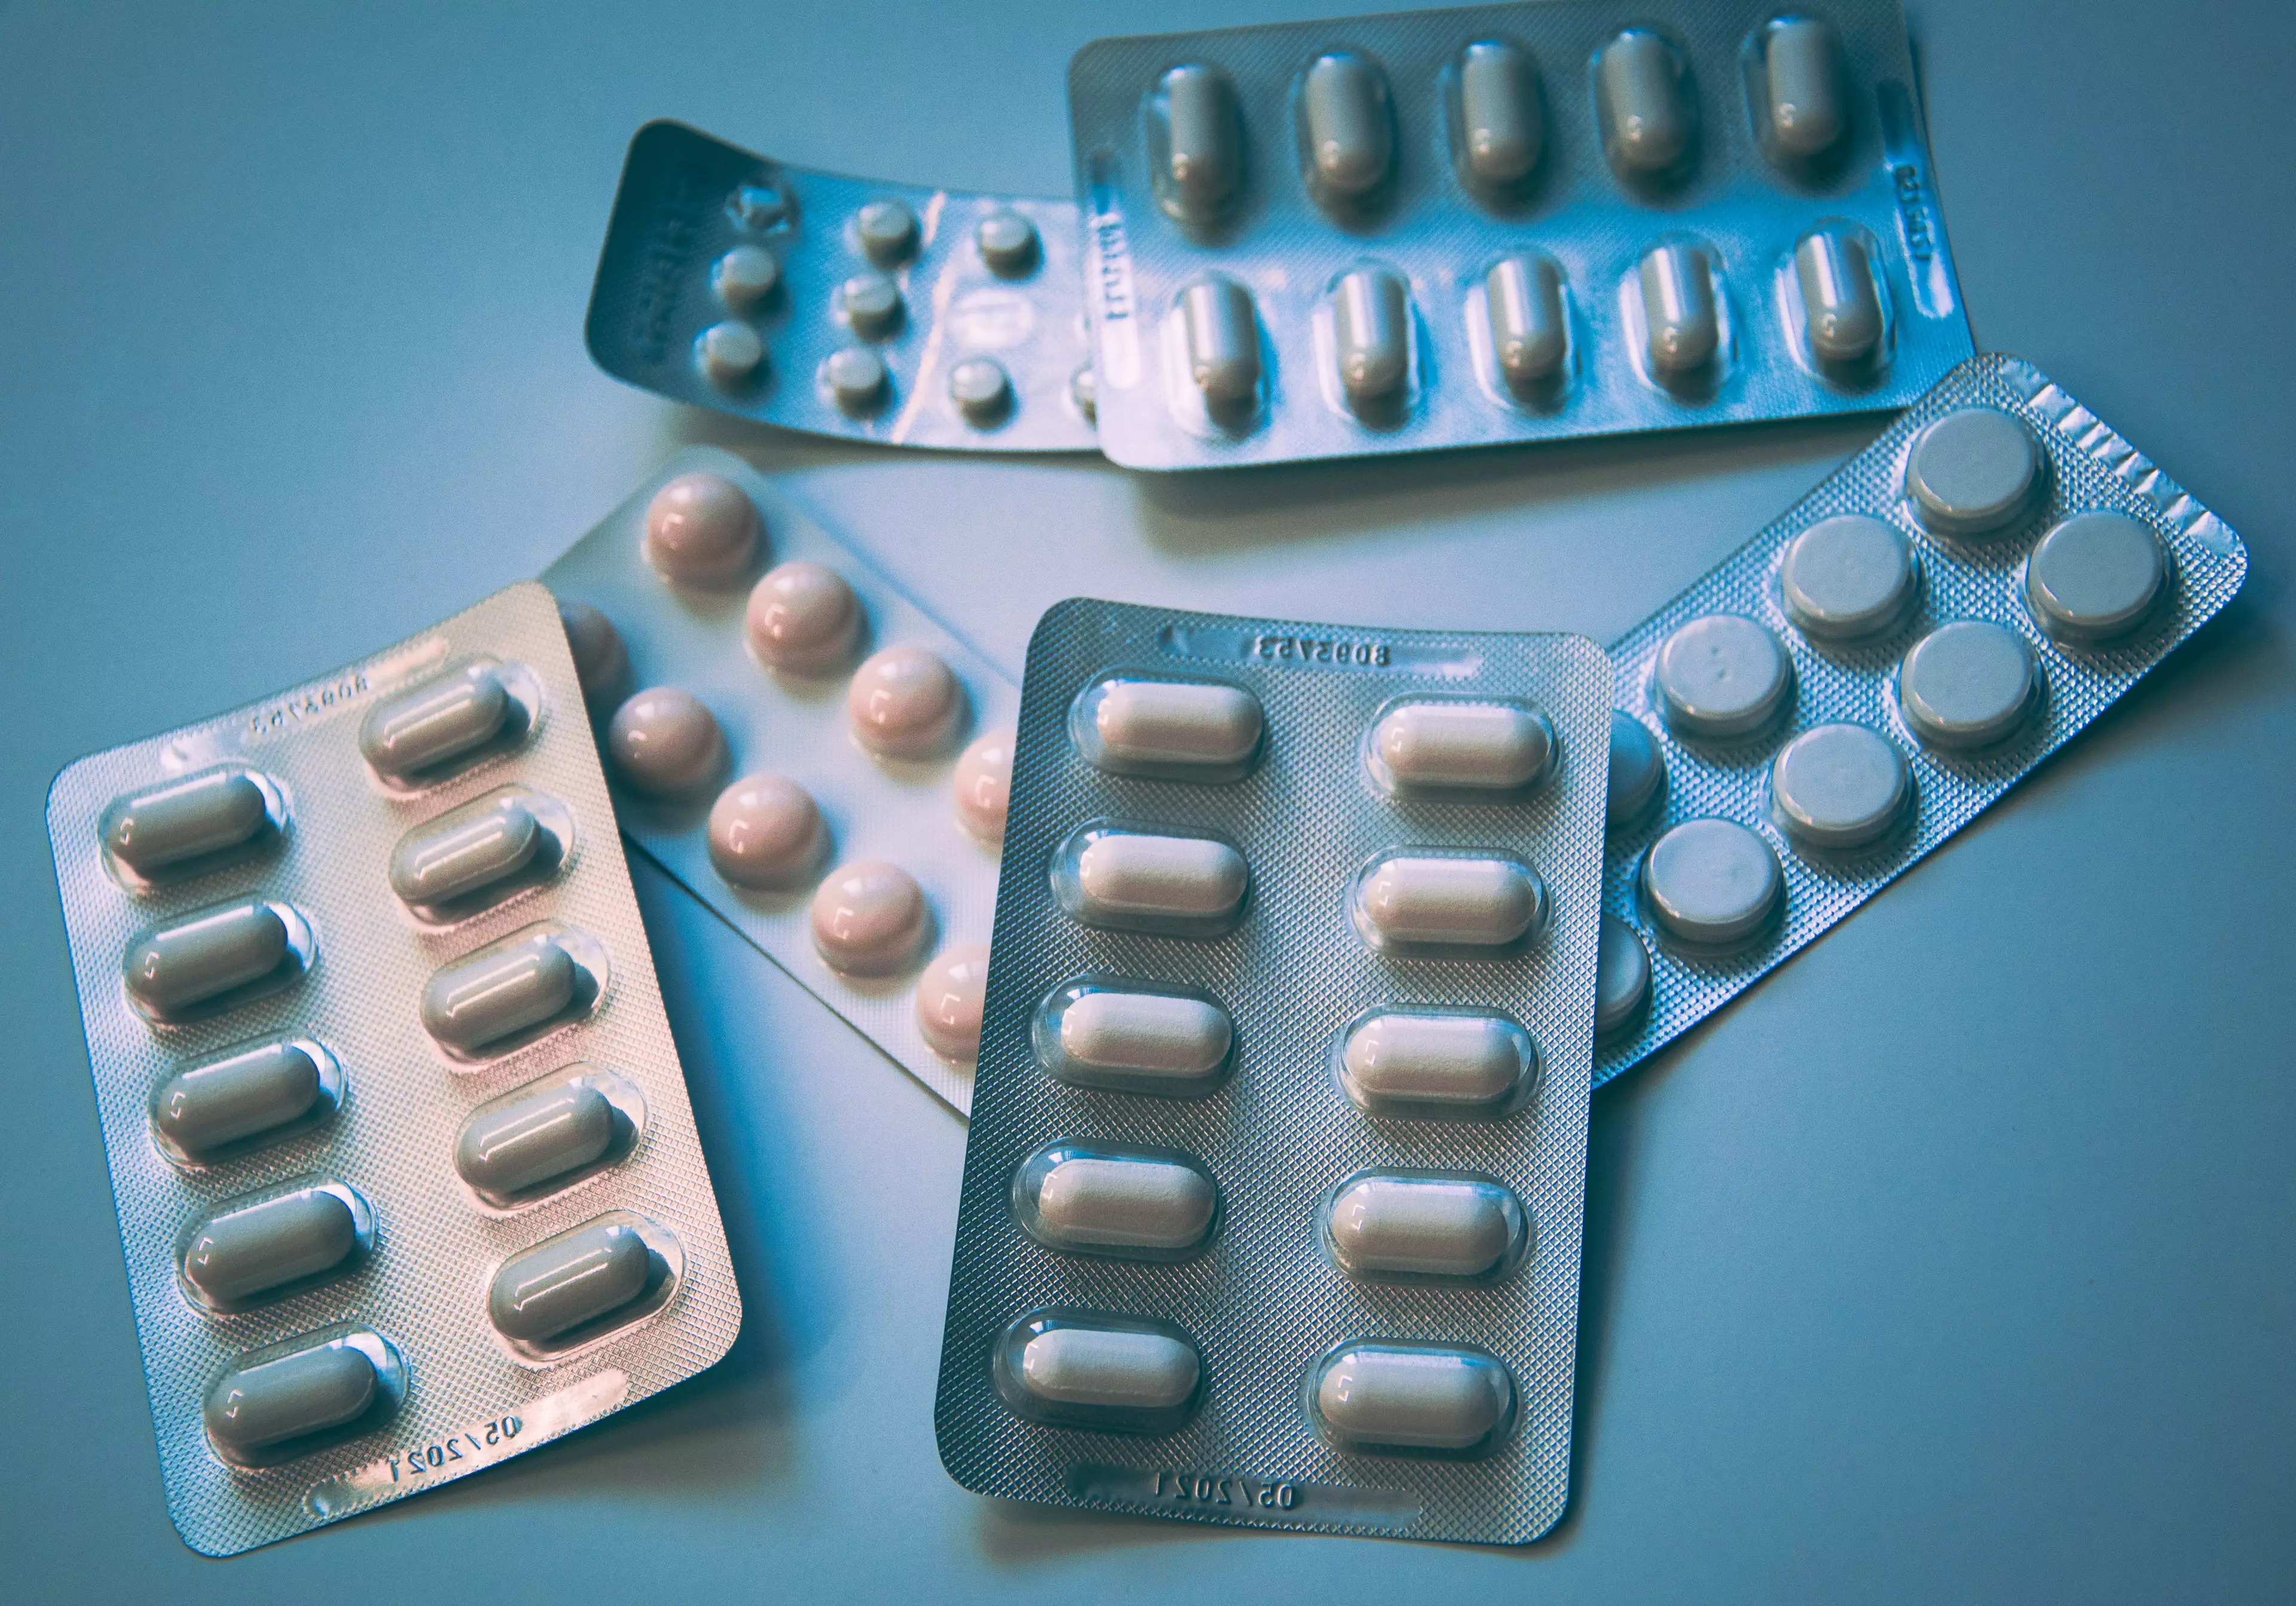 Antidepressant prescriptions rose in lockdown (